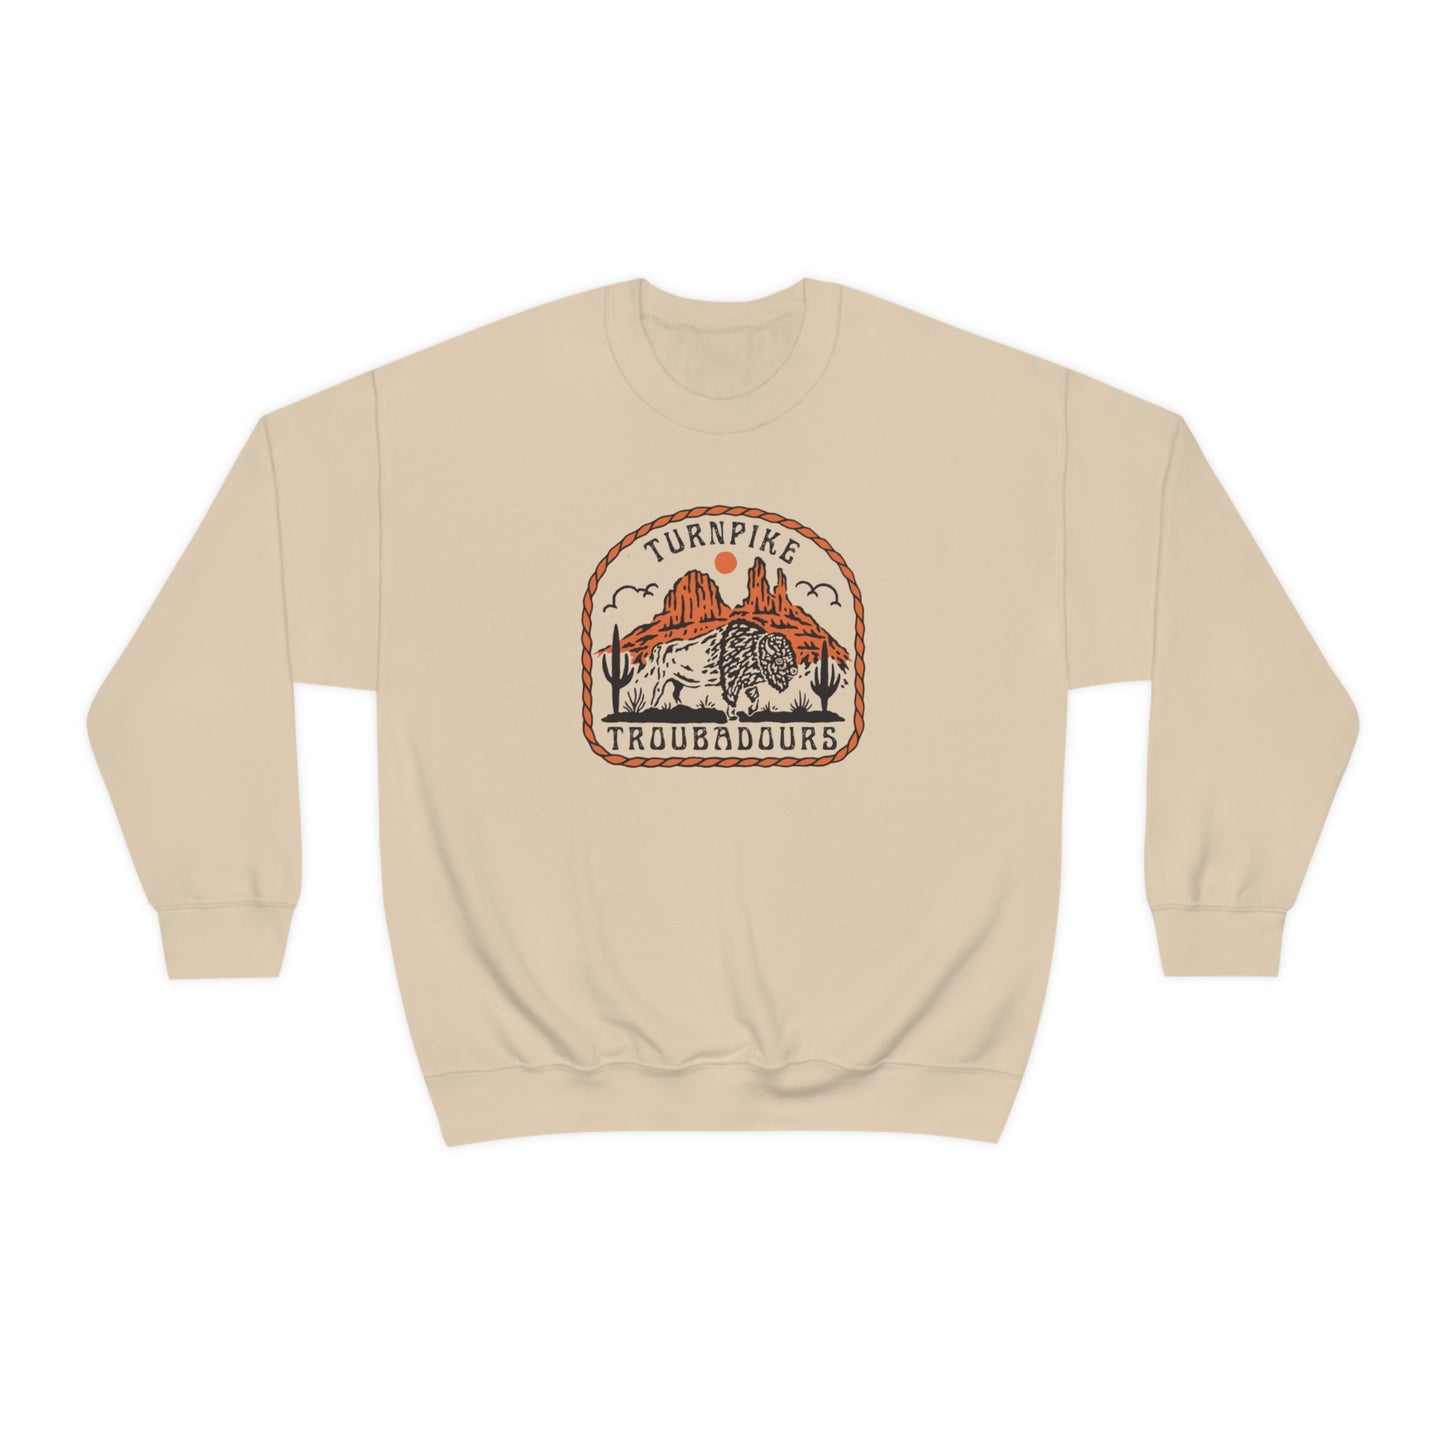 Turnpike Troubadours Sweatshirt, Turnpike Troubadours merch, Zach Bryan shirt, Western Graphic Tshirt, Zach Bryan Gift Idea